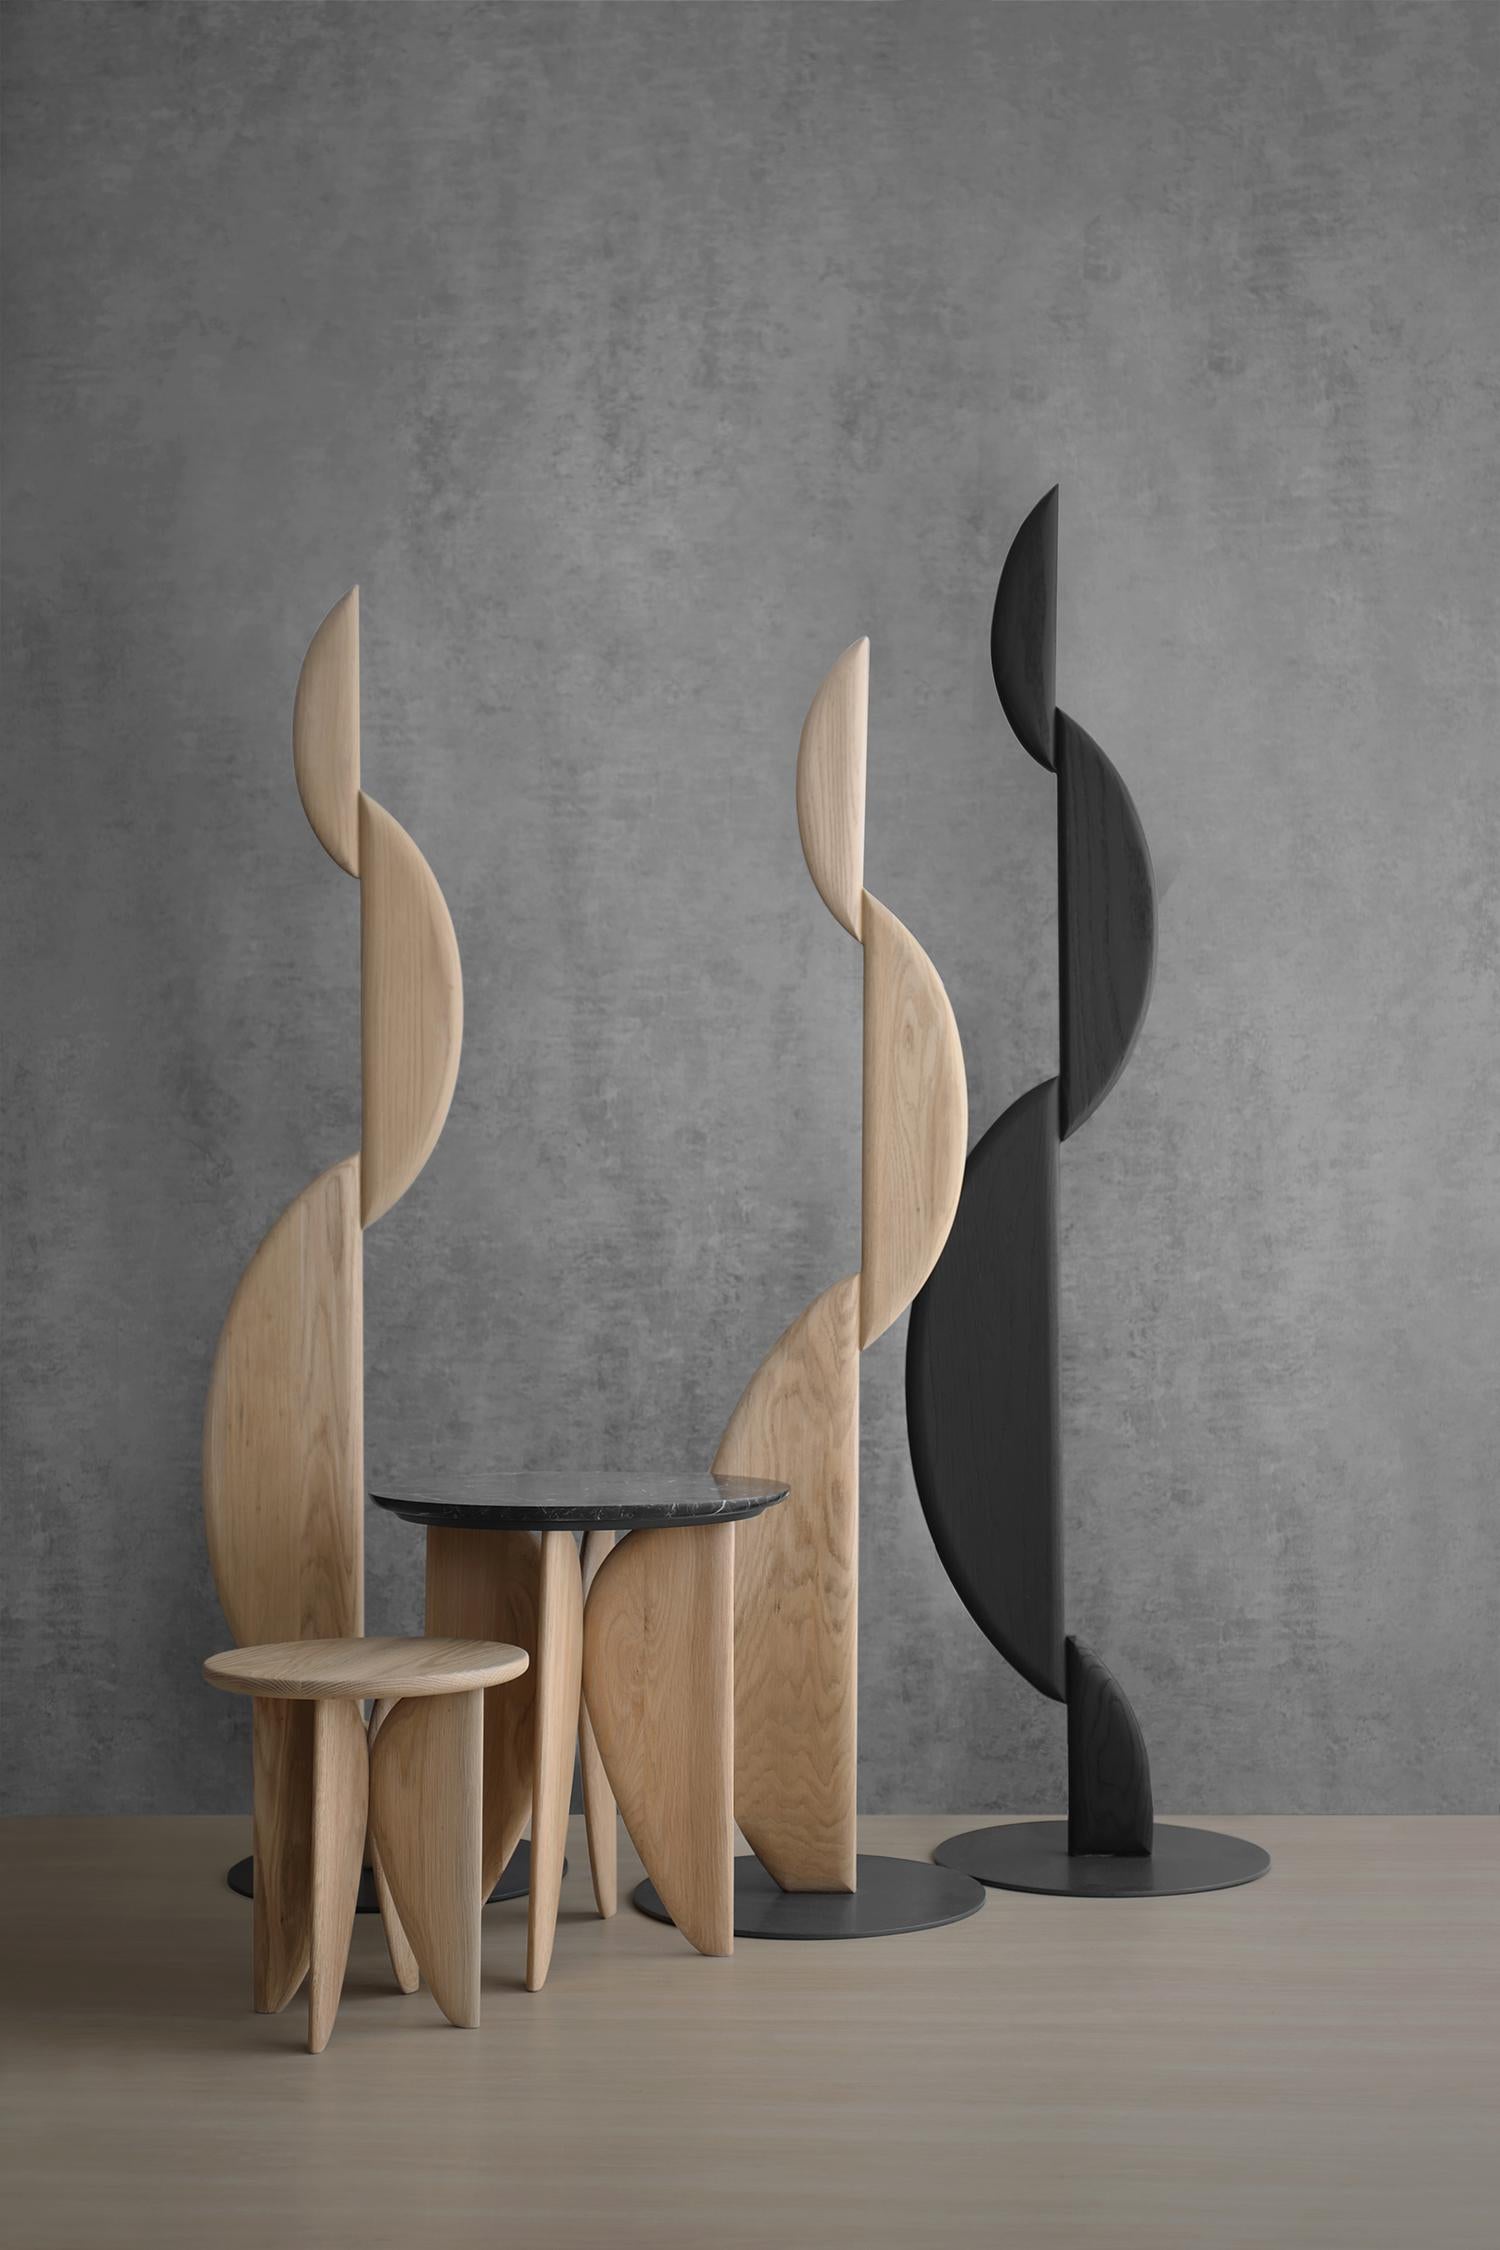 Die I Primera Sculpture ist Teil der Noviembre Kollektion, die eine überzeugende Auswahl an Möbeln bietet, die dazu einladen, Form, Funktion und die ruhigen Linien zu erforschen, die jedes Stück definieren. Inspiriert von Constantin Brancusis